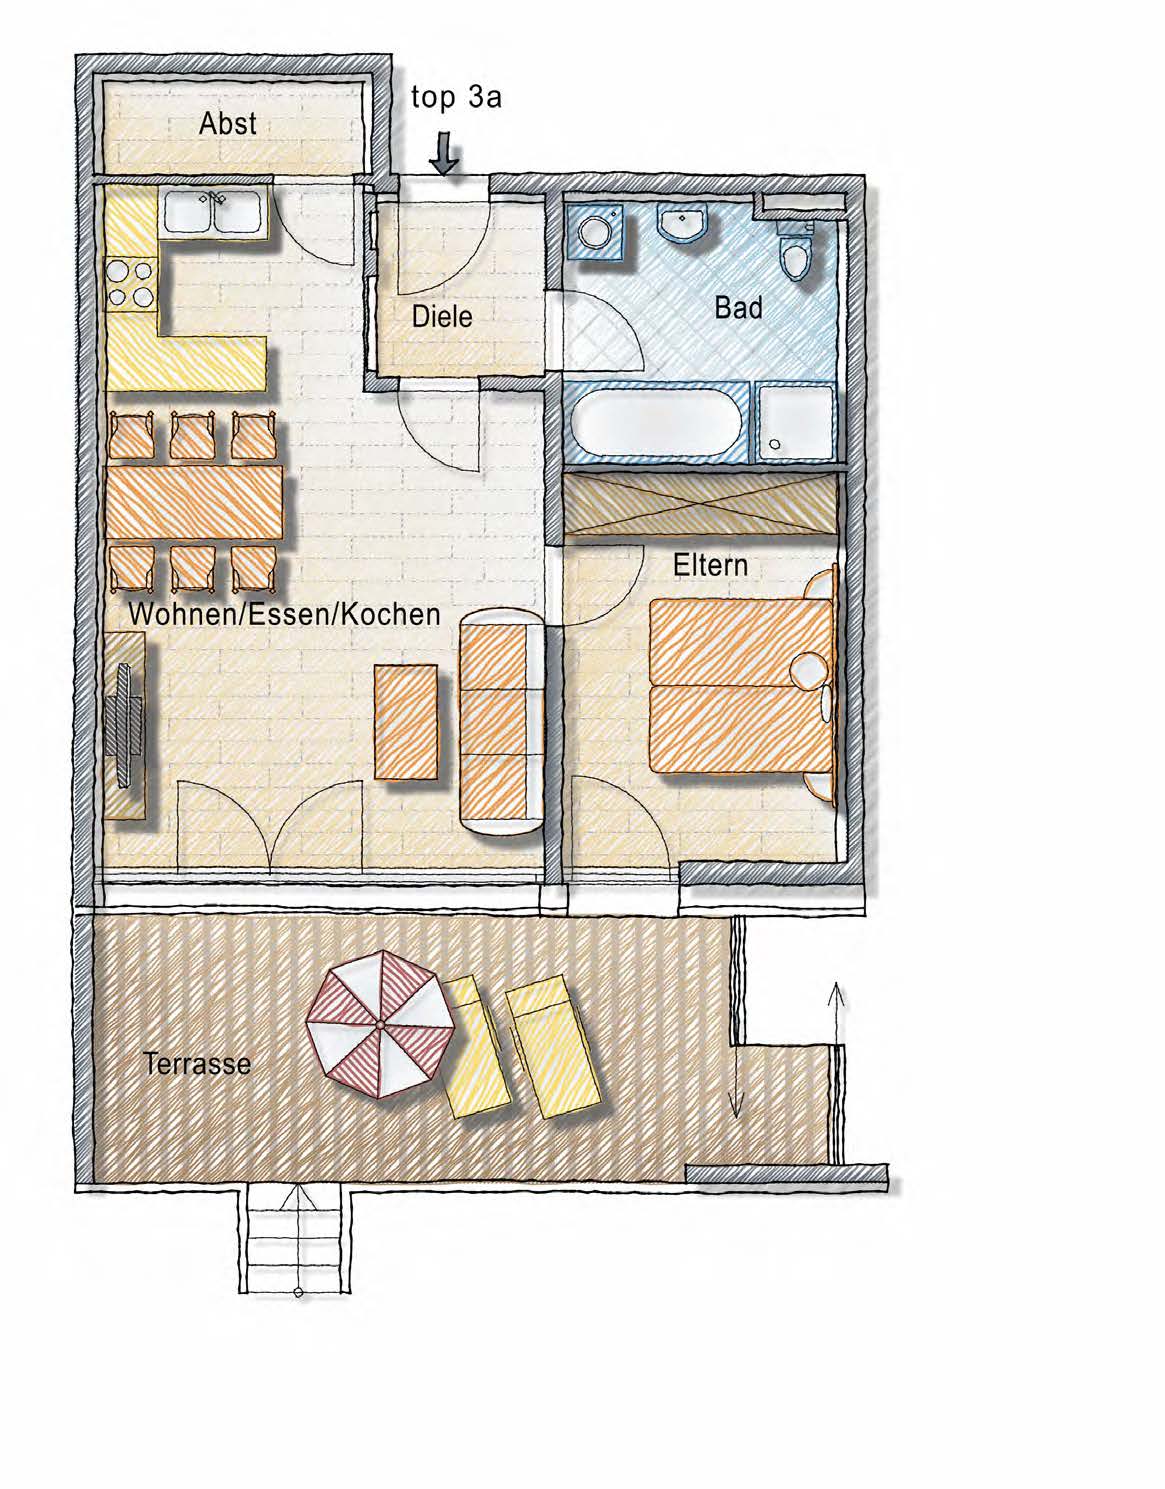 Top 3a Erdgeschoss 2-Zimmer-Wohnung Wohnen / Kochen Eltern Bad/WC Abstellraum Diele 31,16 m 2 12,62 m 2 8,18 m 2 2,90 m 2 3,47 m 2 Wohnfl.